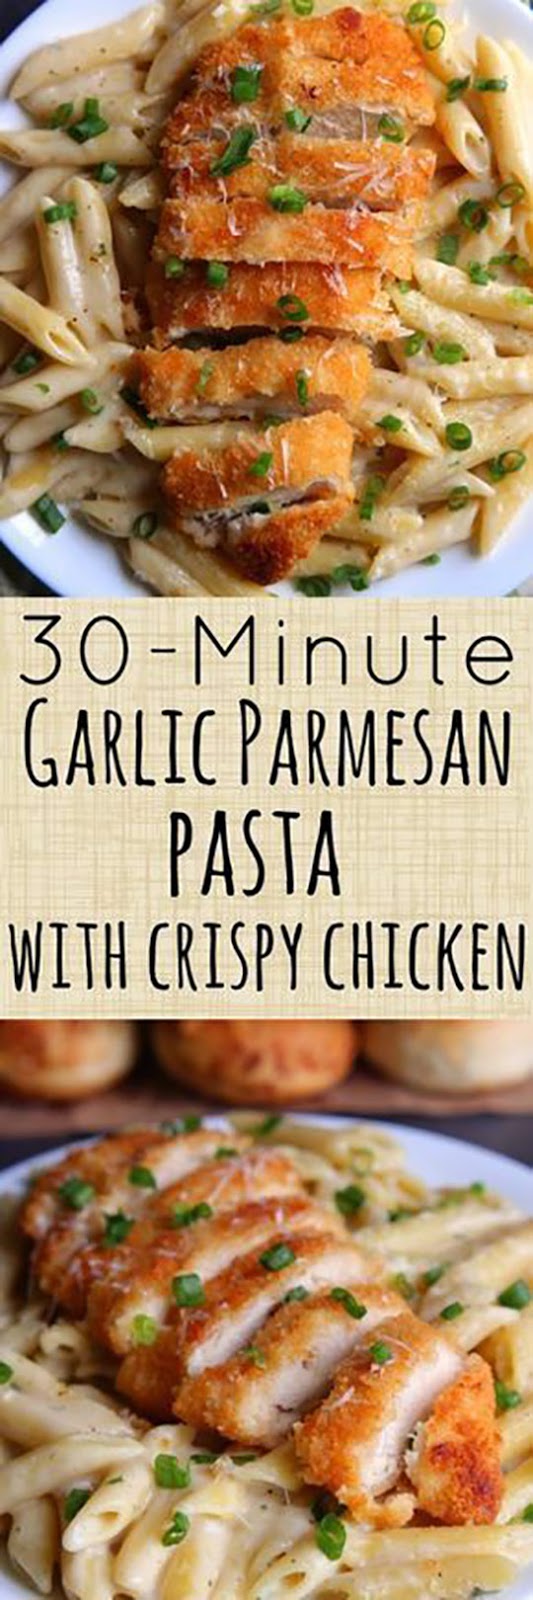 30-Minute Garlic Parmesan Pasta with Crispy Chicken